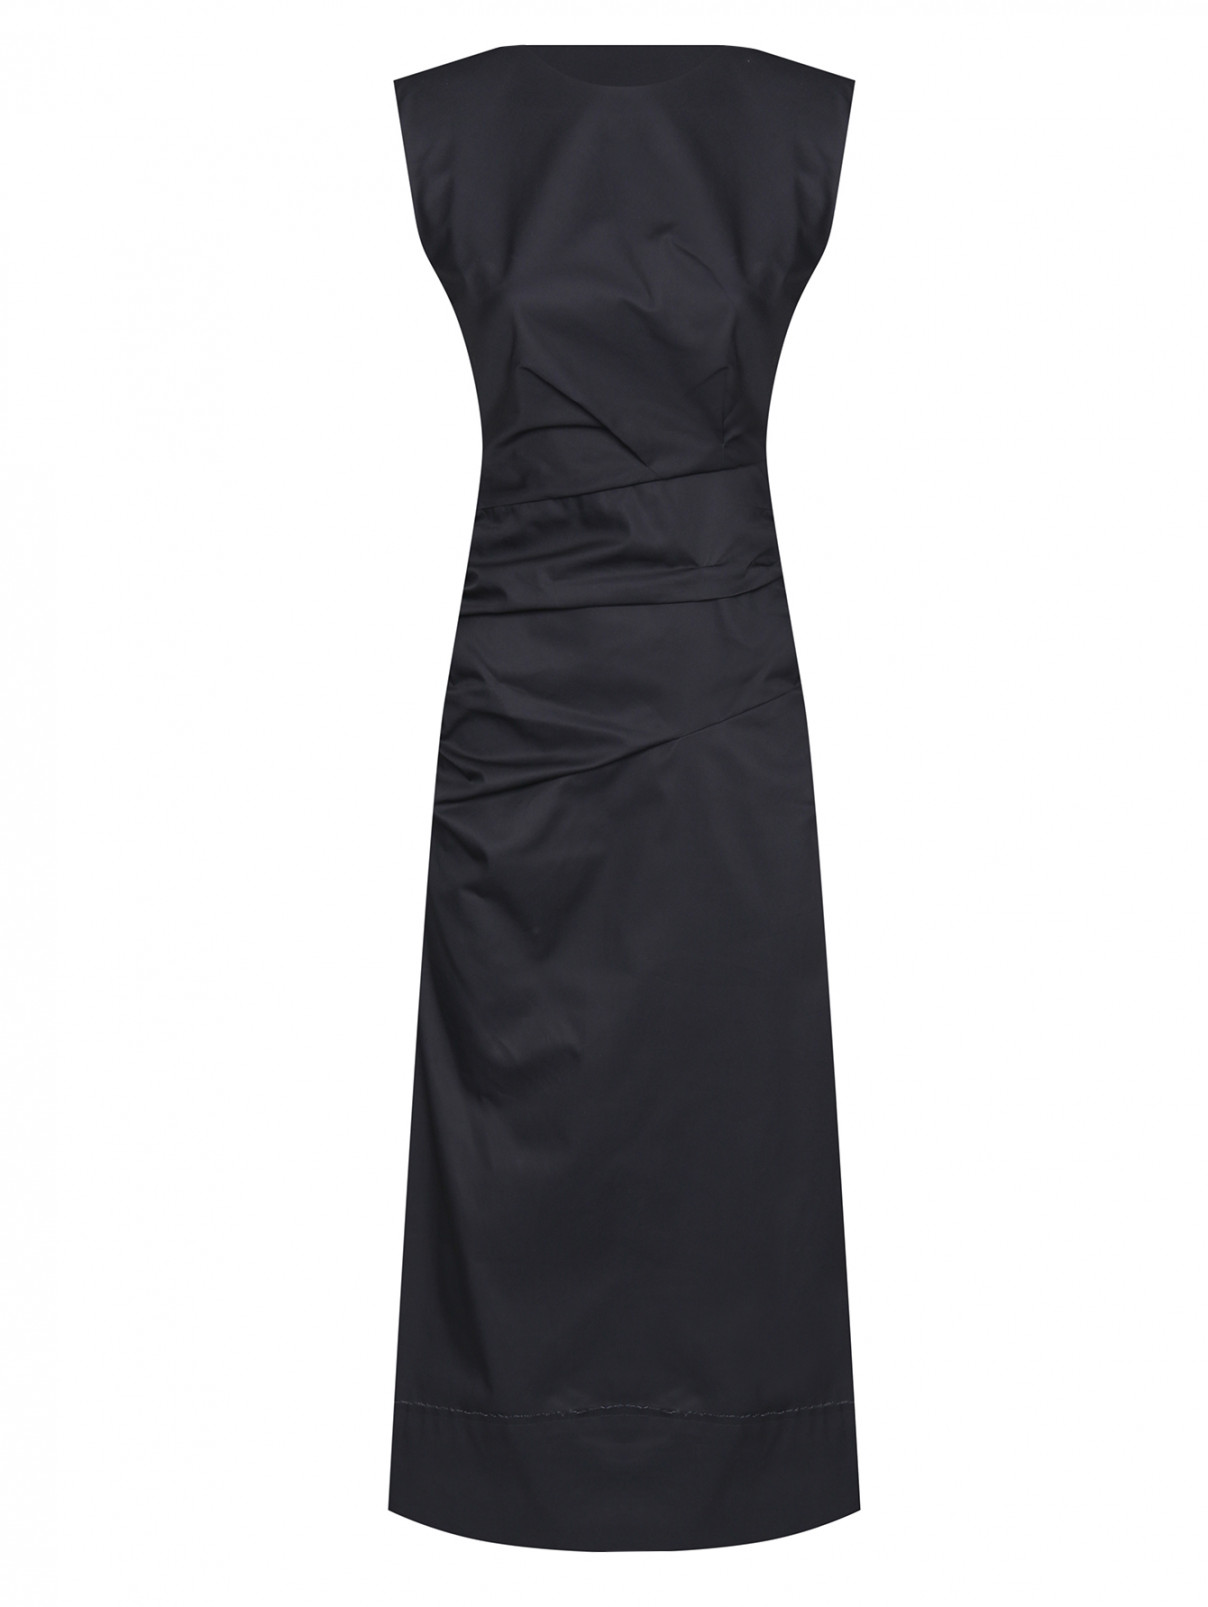 Платье-миди из хлопка с вырезом на спине Dorothee Schumacher  –  Общий вид  – Цвет:  Черный